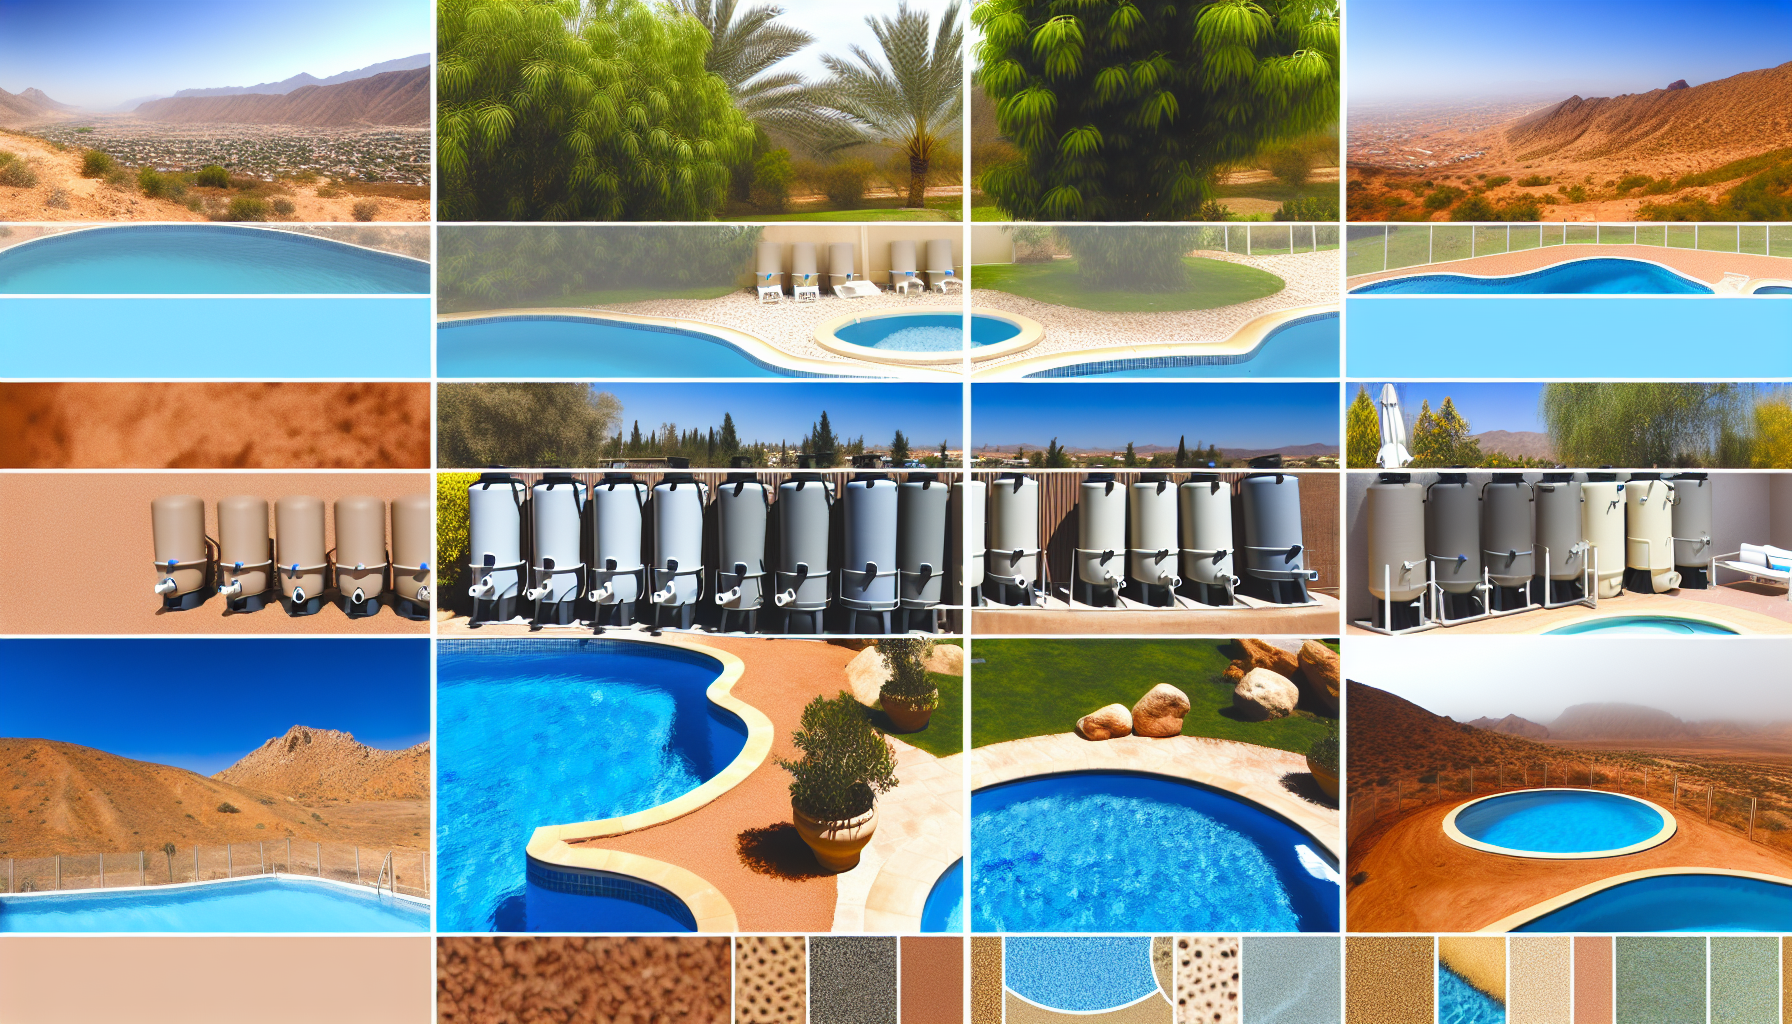 Collage aus verschiedenen Bildern mit Schwimmbädern, Landschaften und Poolfilteranlagen.